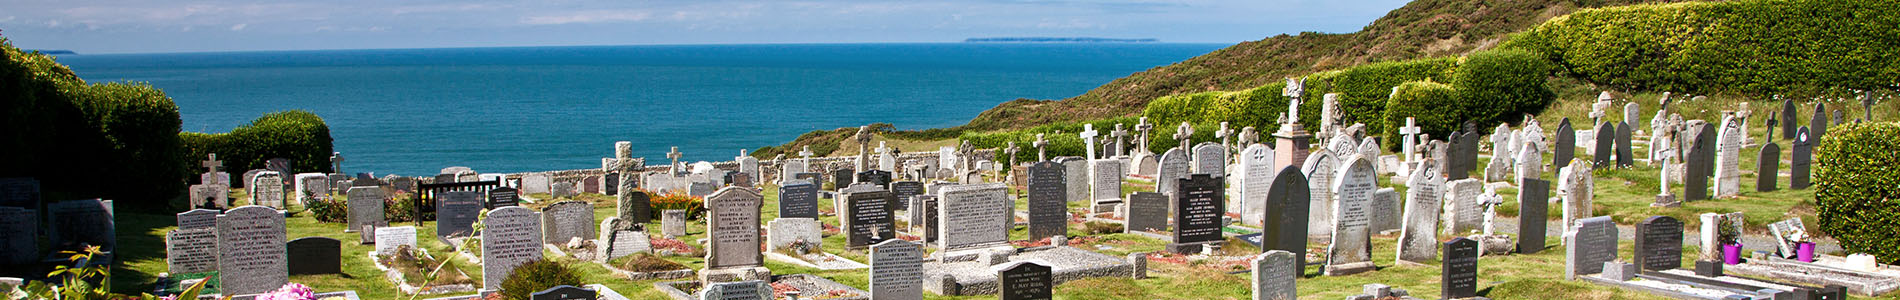 Logiciel de gestion de cimetières